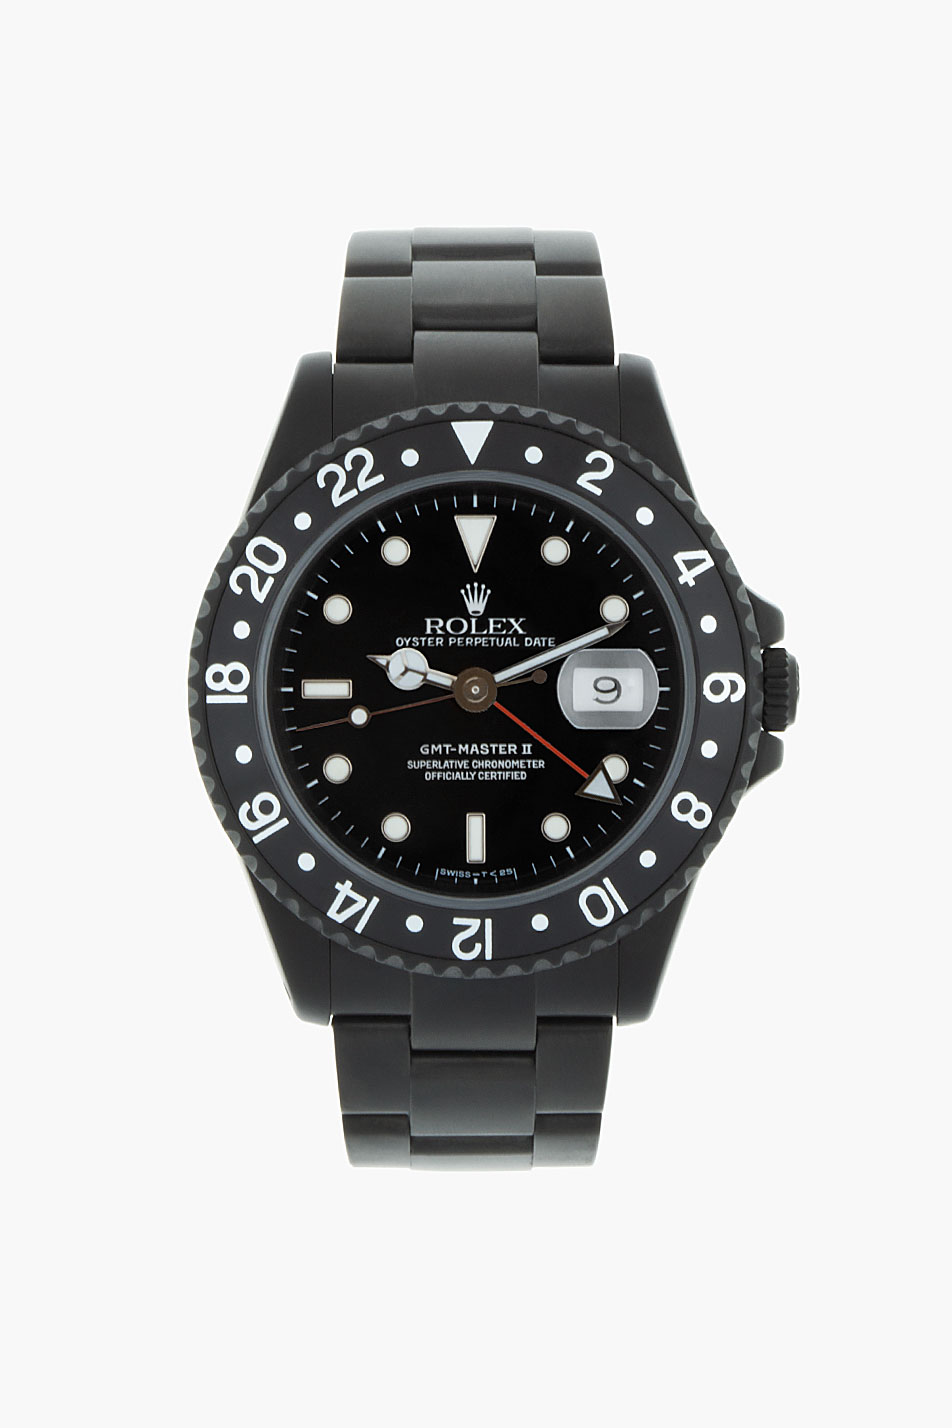 Refurbished Black î€€Limitedî€ Edition Rolex Watch Collection SOLETOPIA